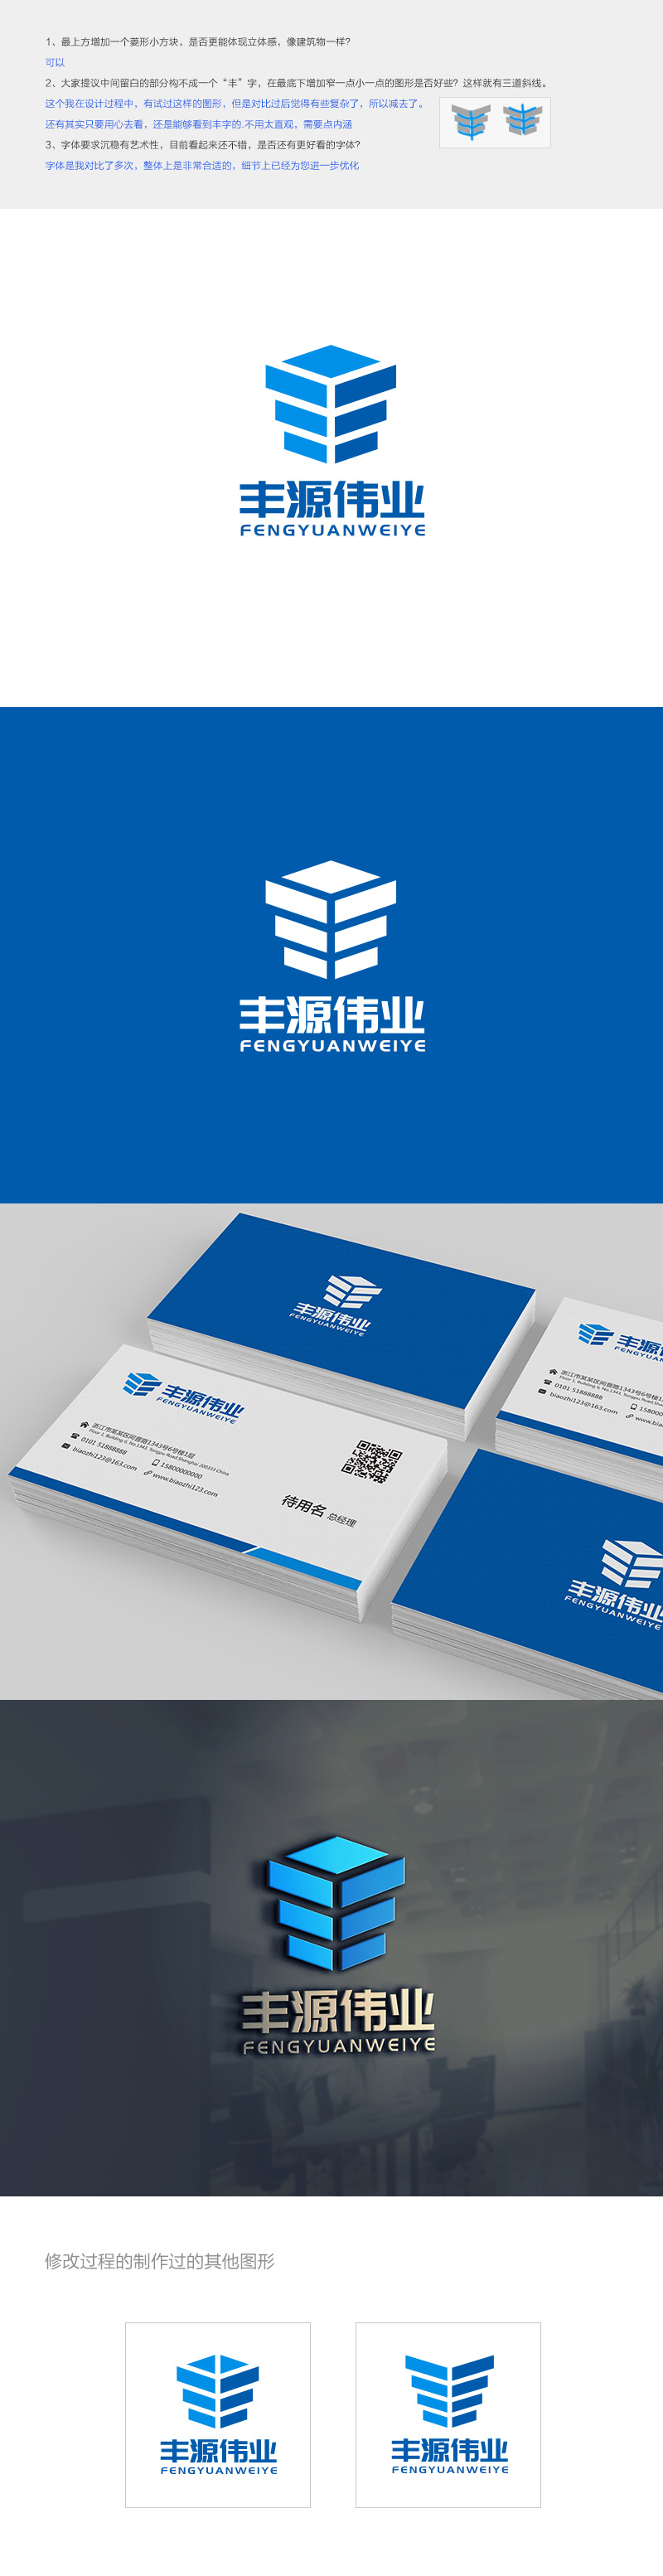 吴晓伟的北京丰源伟业建筑装饰工程有限公司logo设计